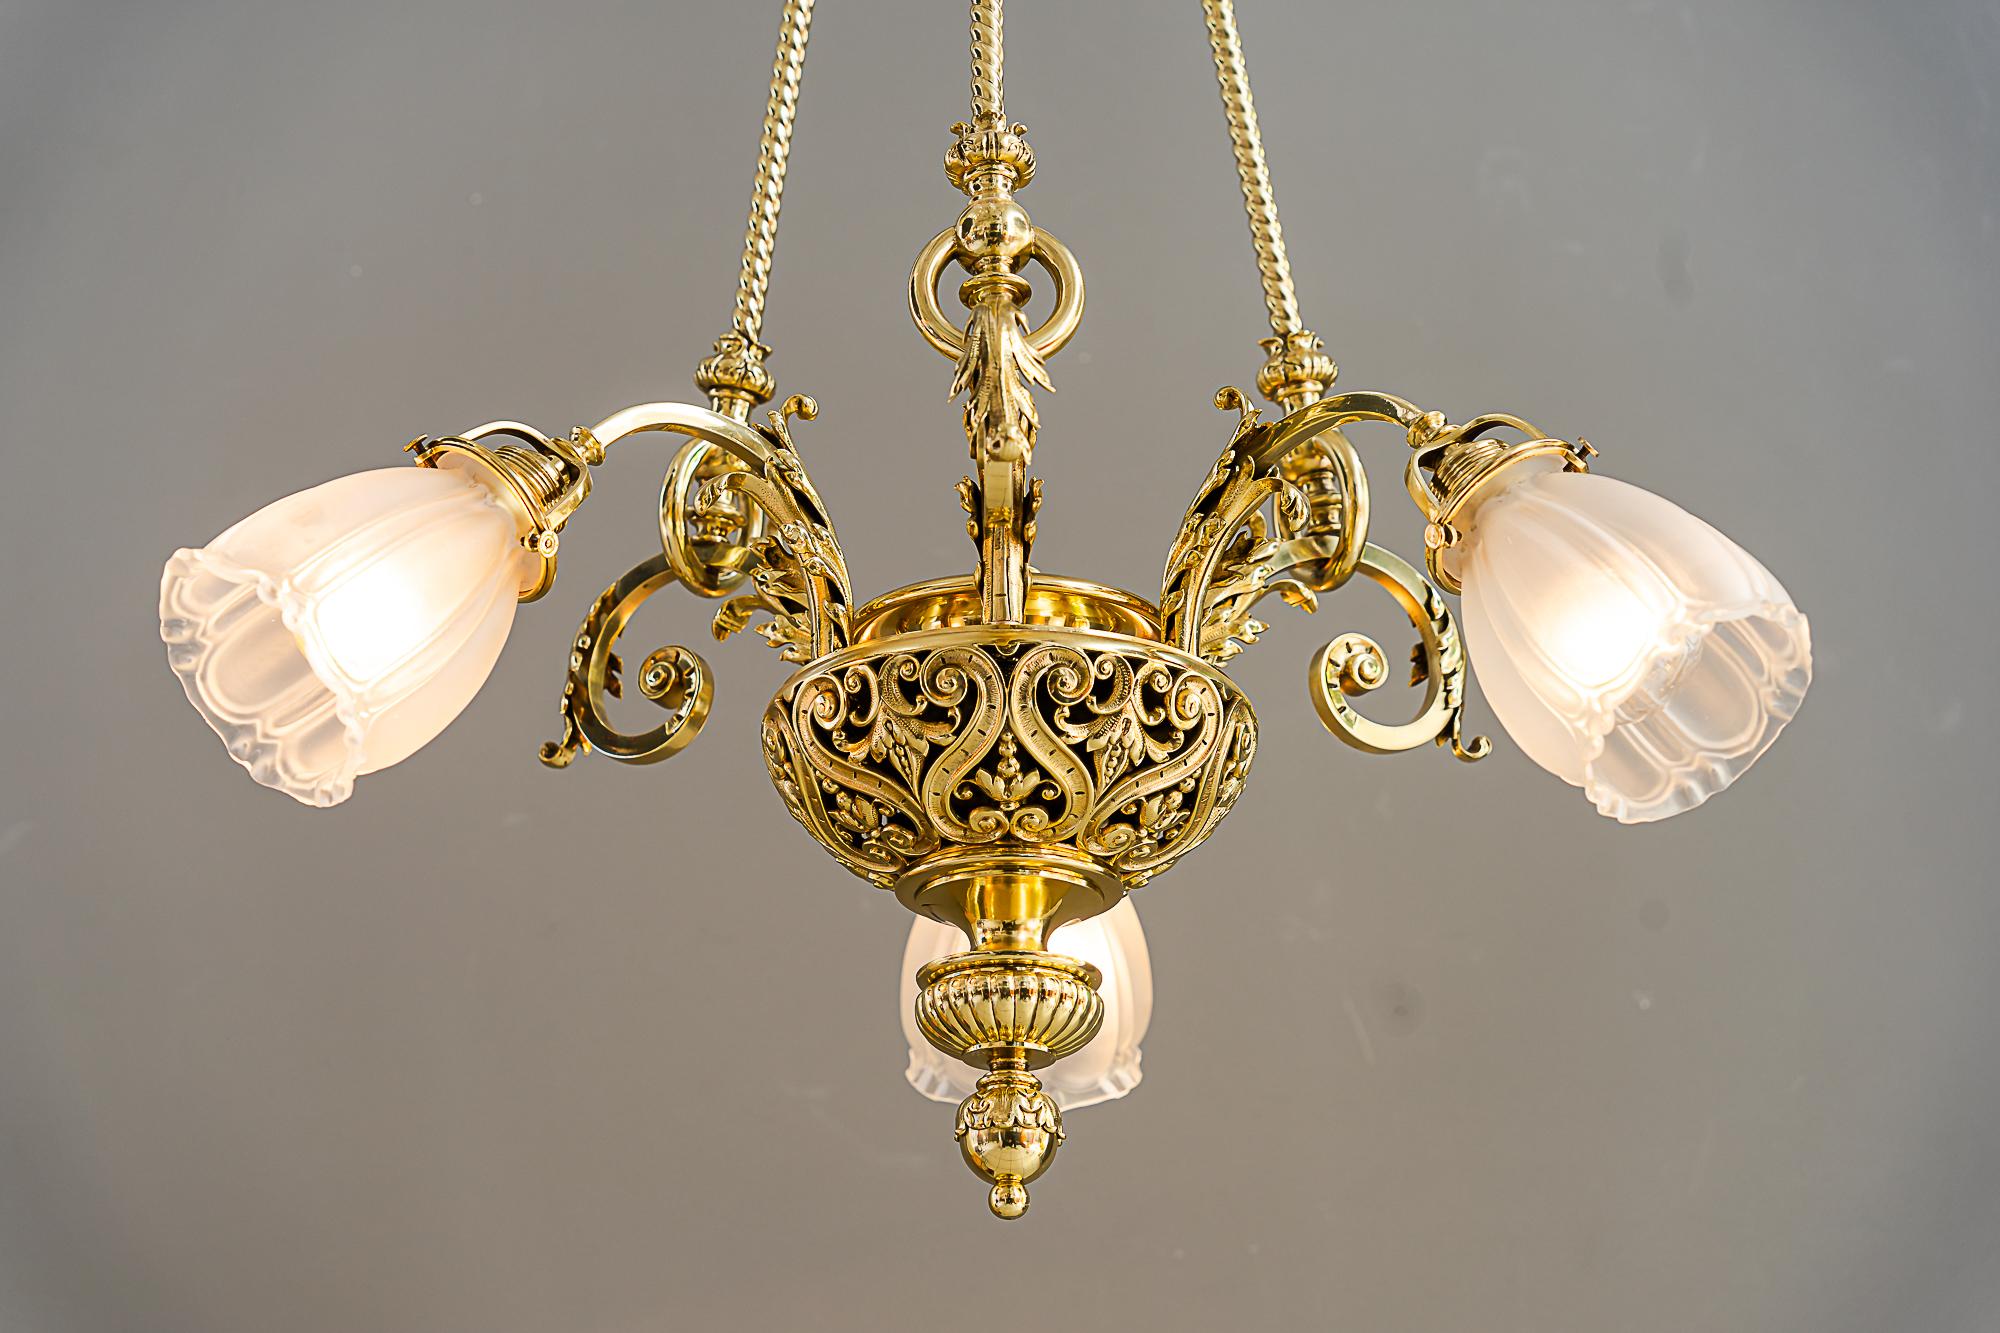 Historic chandelier vienna around 1890s with original antique glass shades For Sale 11